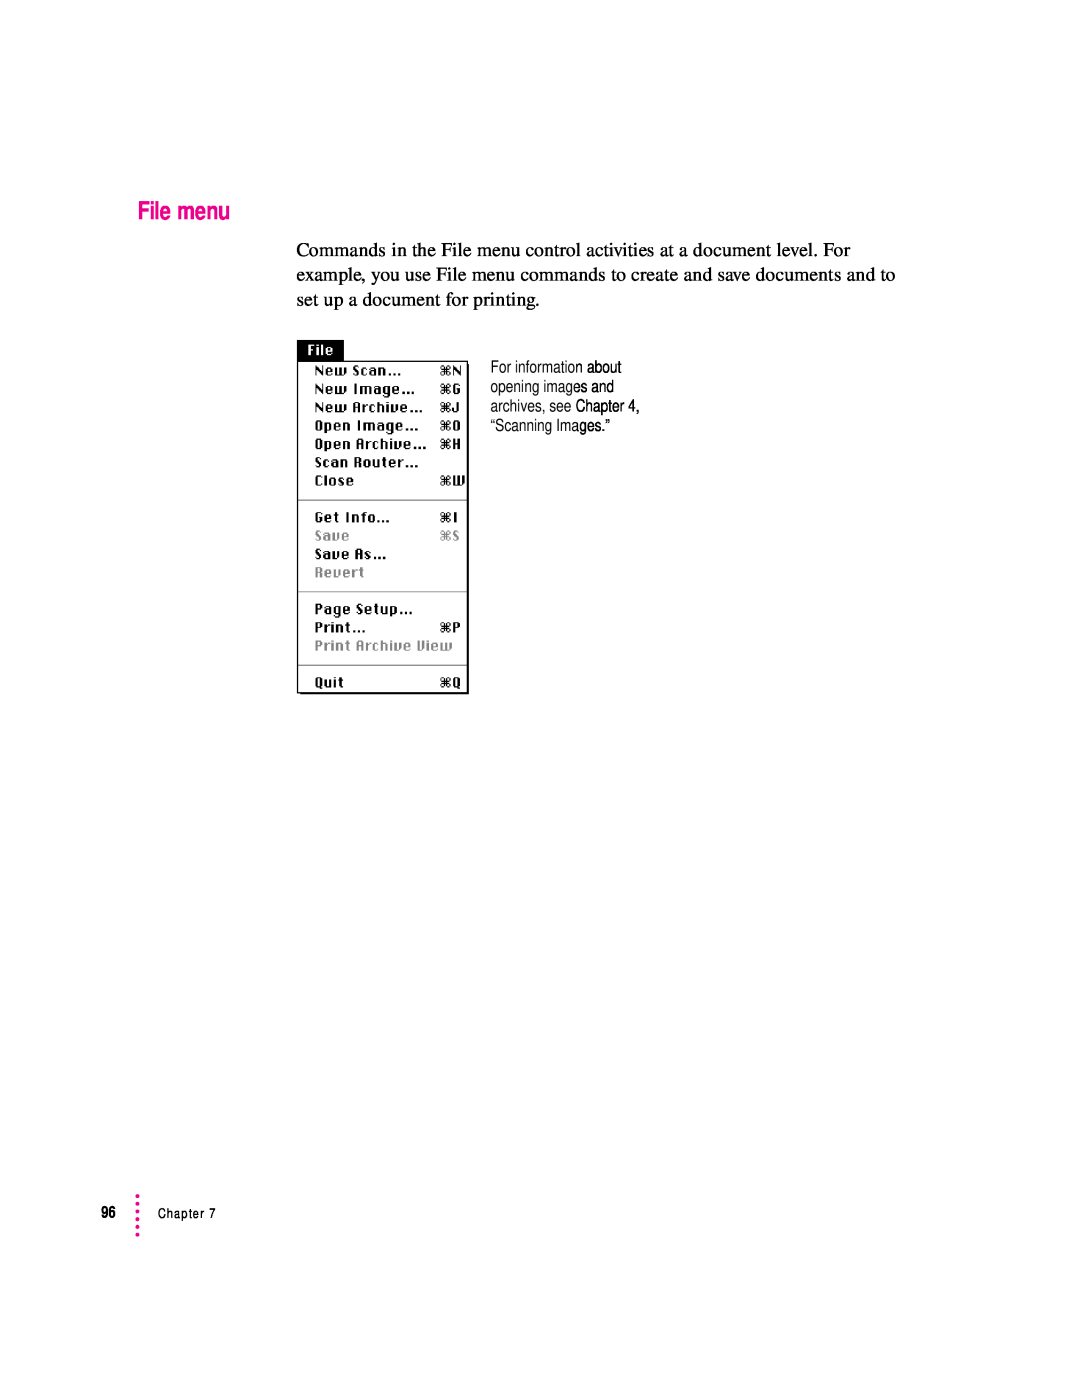 Apple 627, 1230 user manual File menu, Chapter 